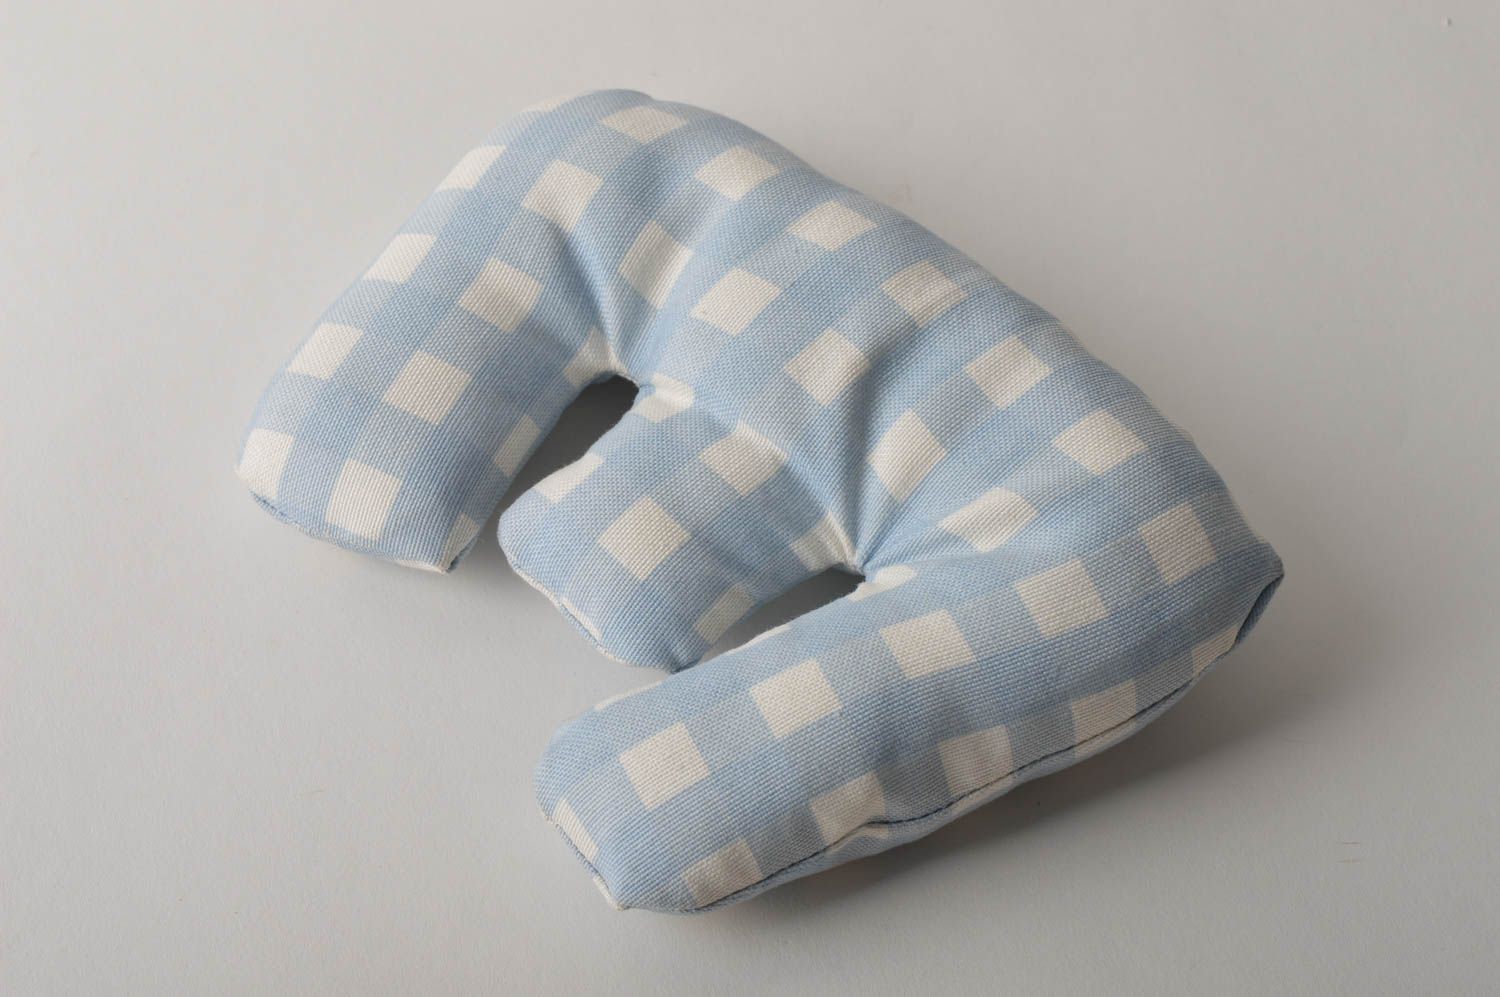 Декоративная подушка handmade хлопковая подушка-буква на диван мягкая буква Е фото 5